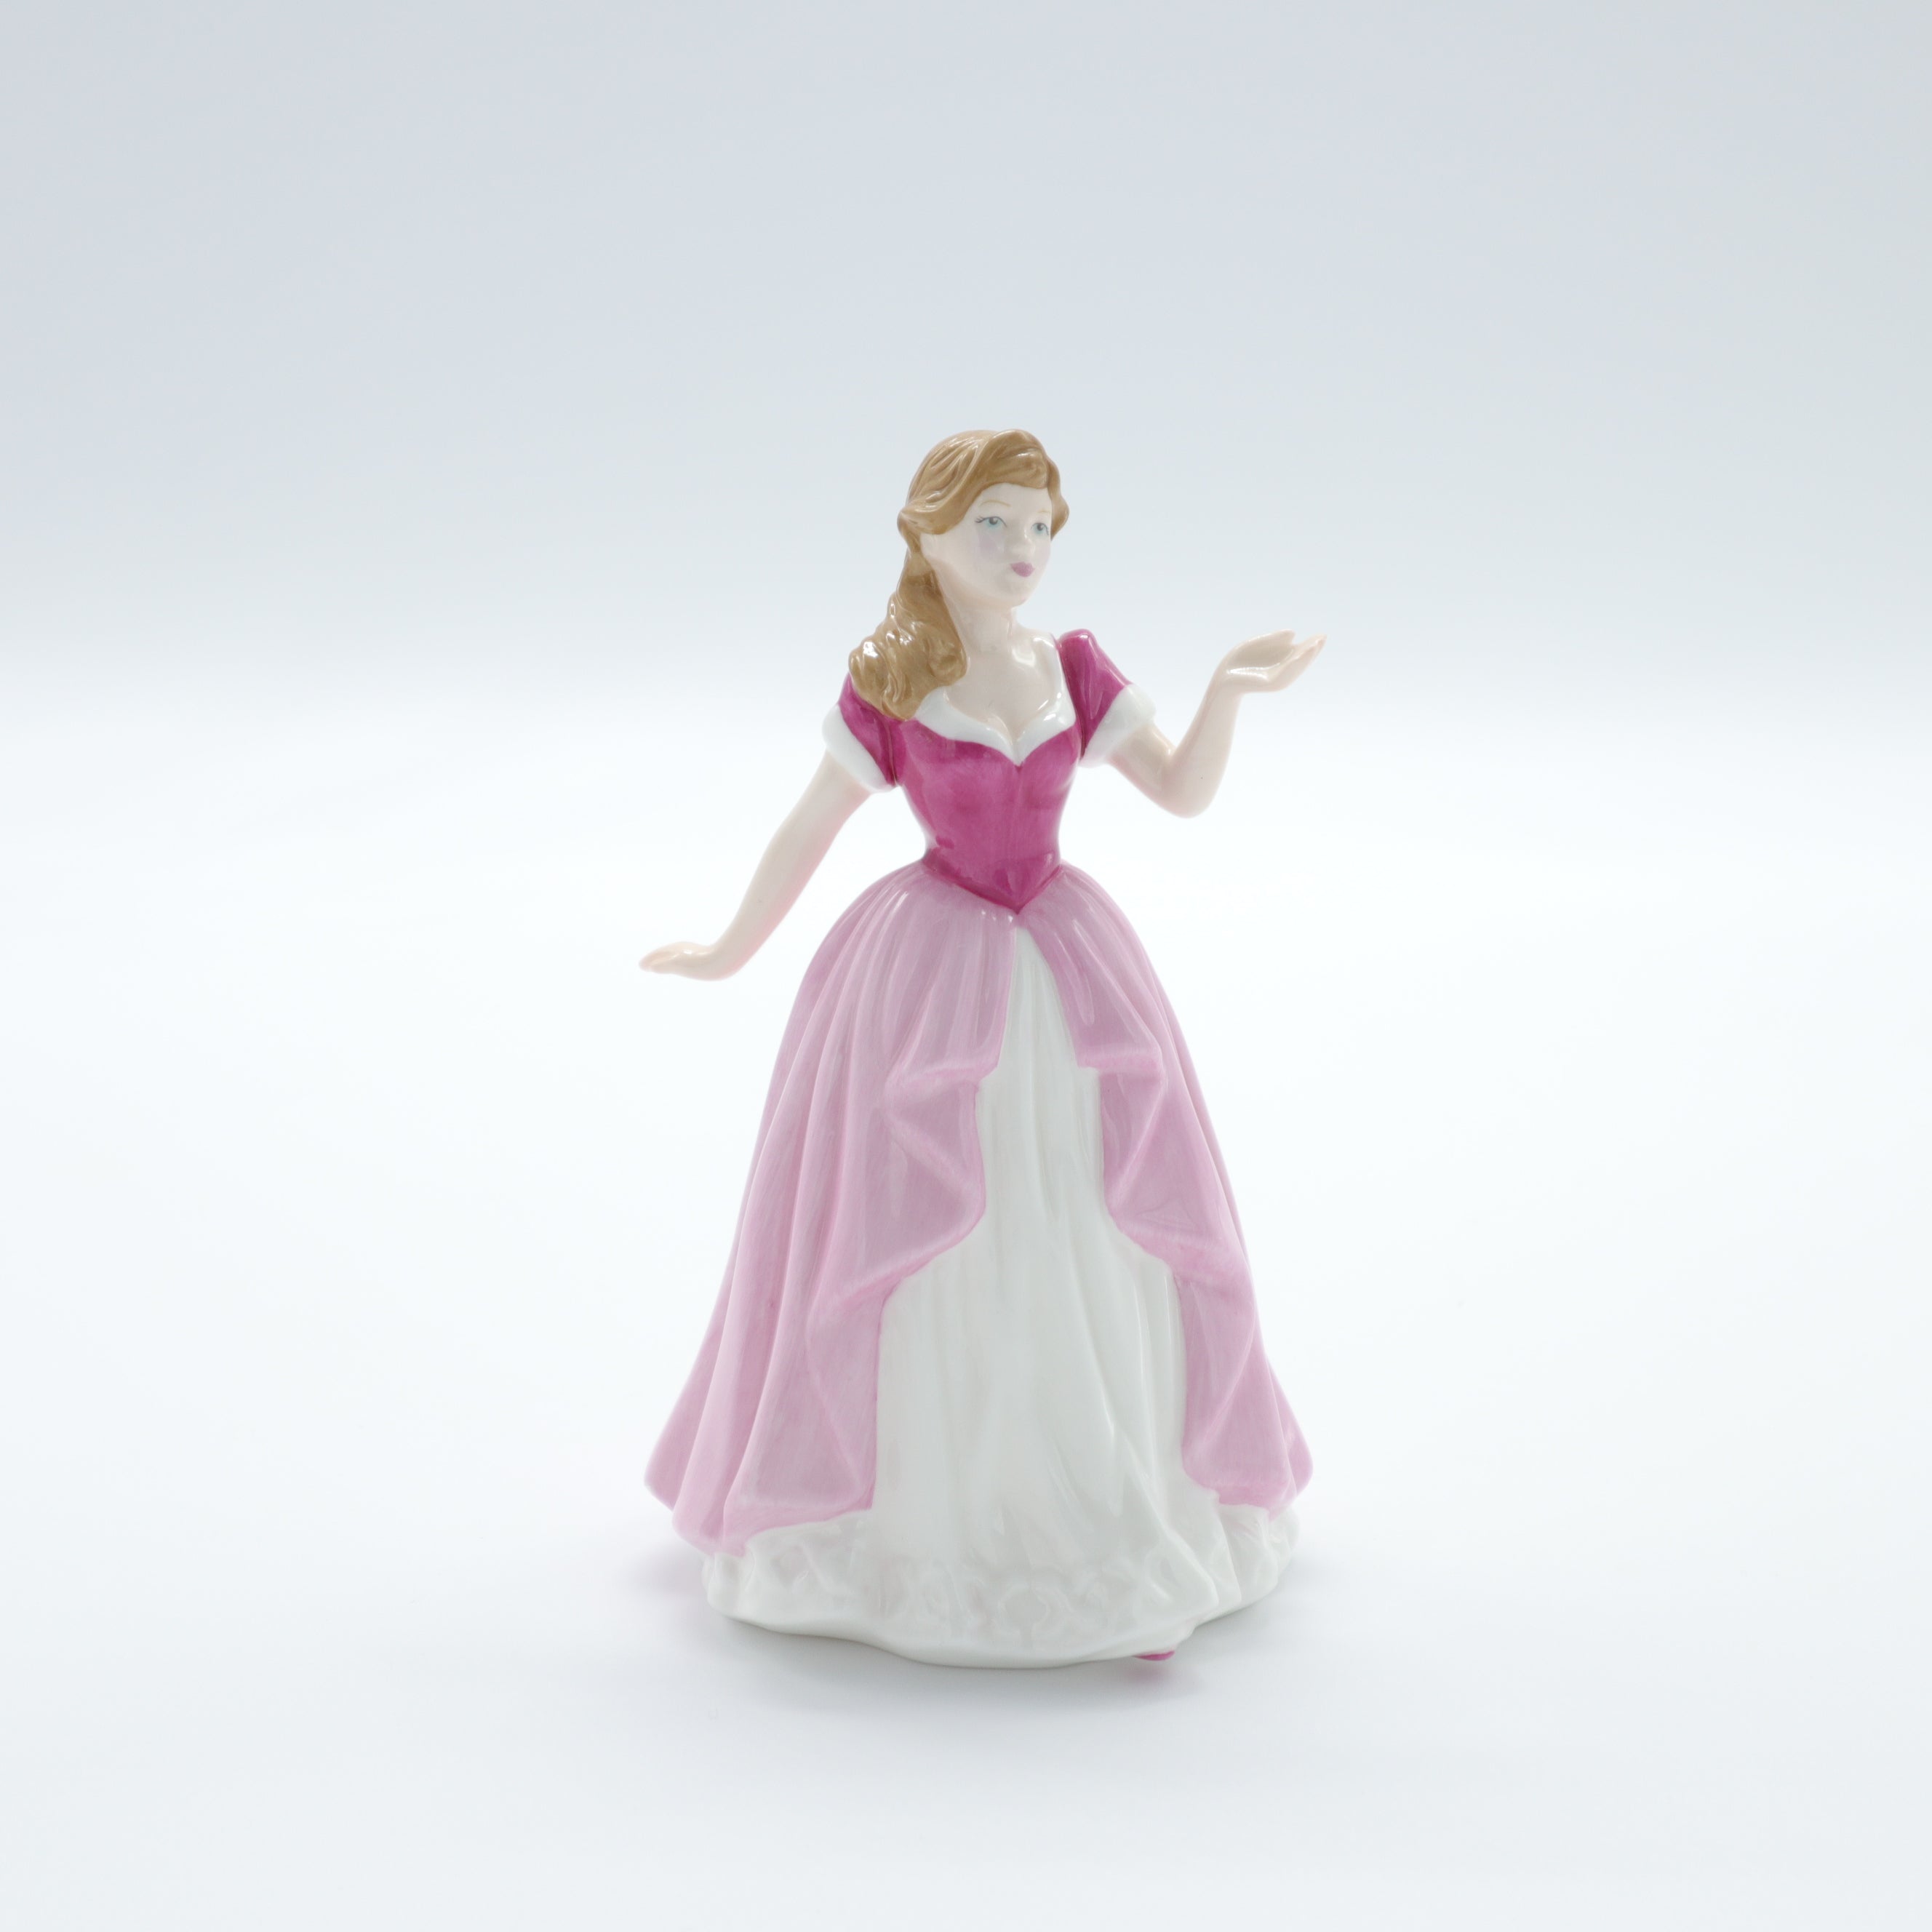 Vintage Pink Seashell Lady Figurine (People ) at Silversnow